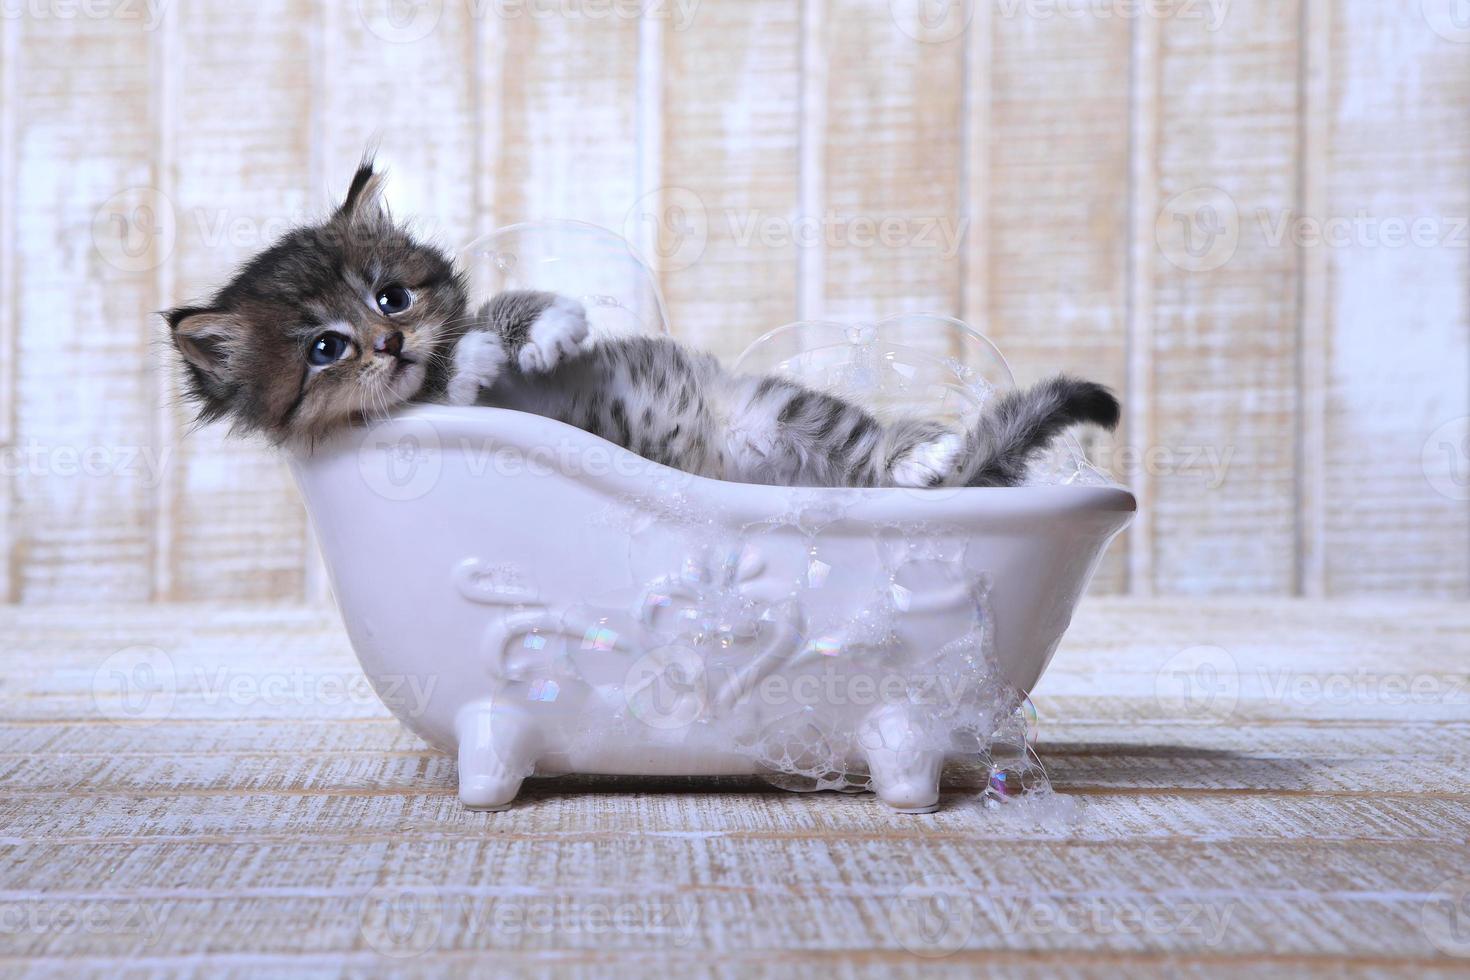 gatinho fofo e adorável em uma banheira relaxando foto